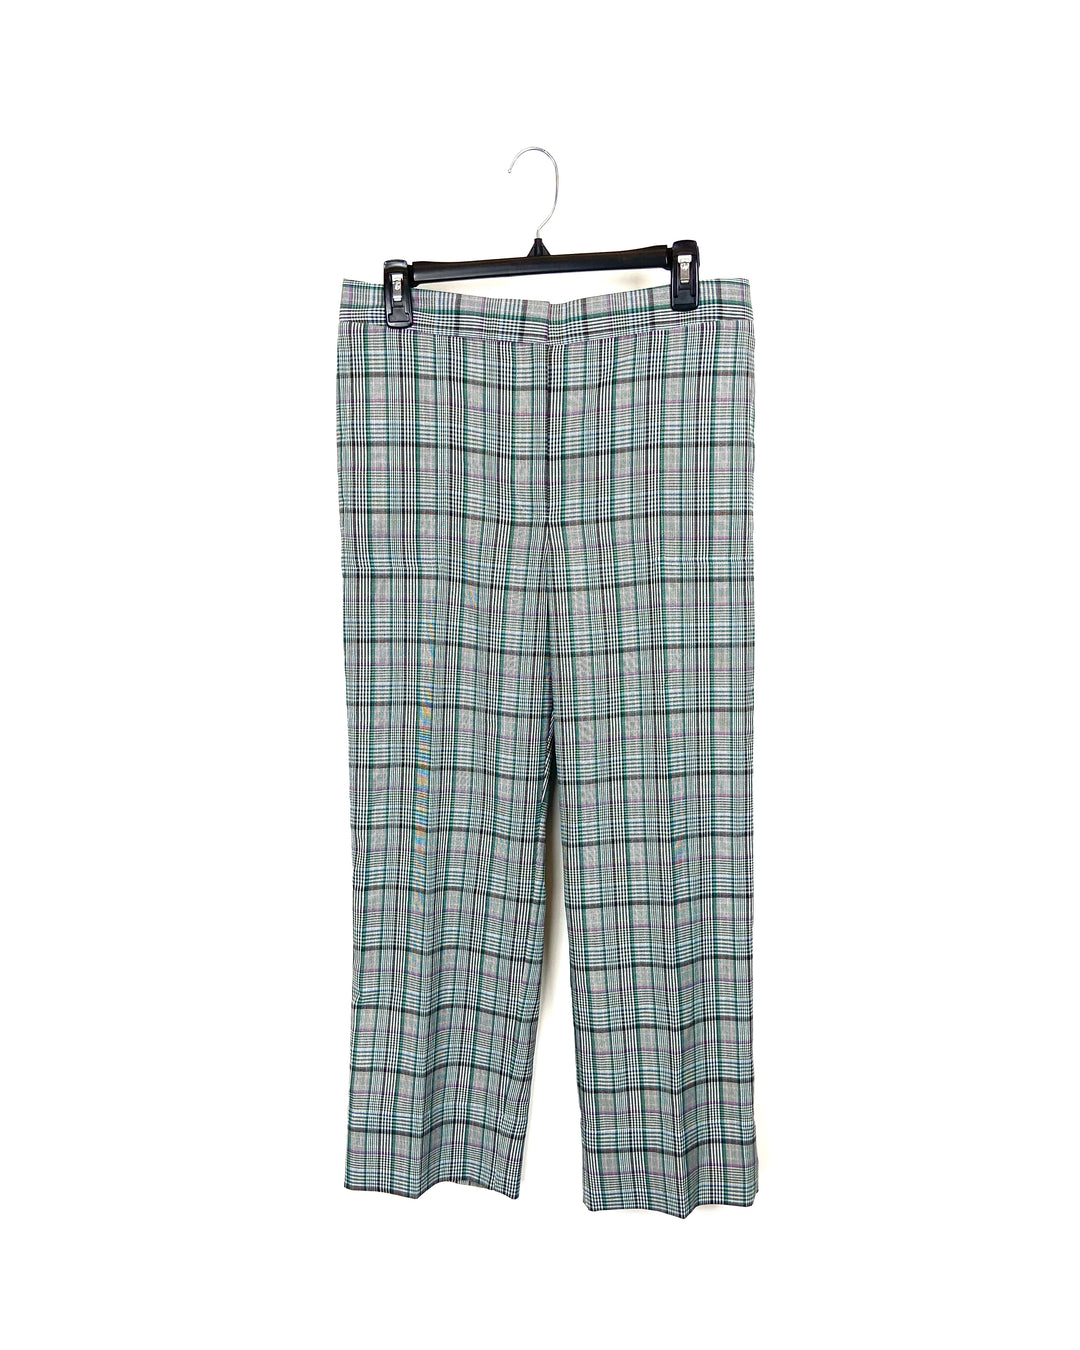 Colorful Plaid Pants - Size 8